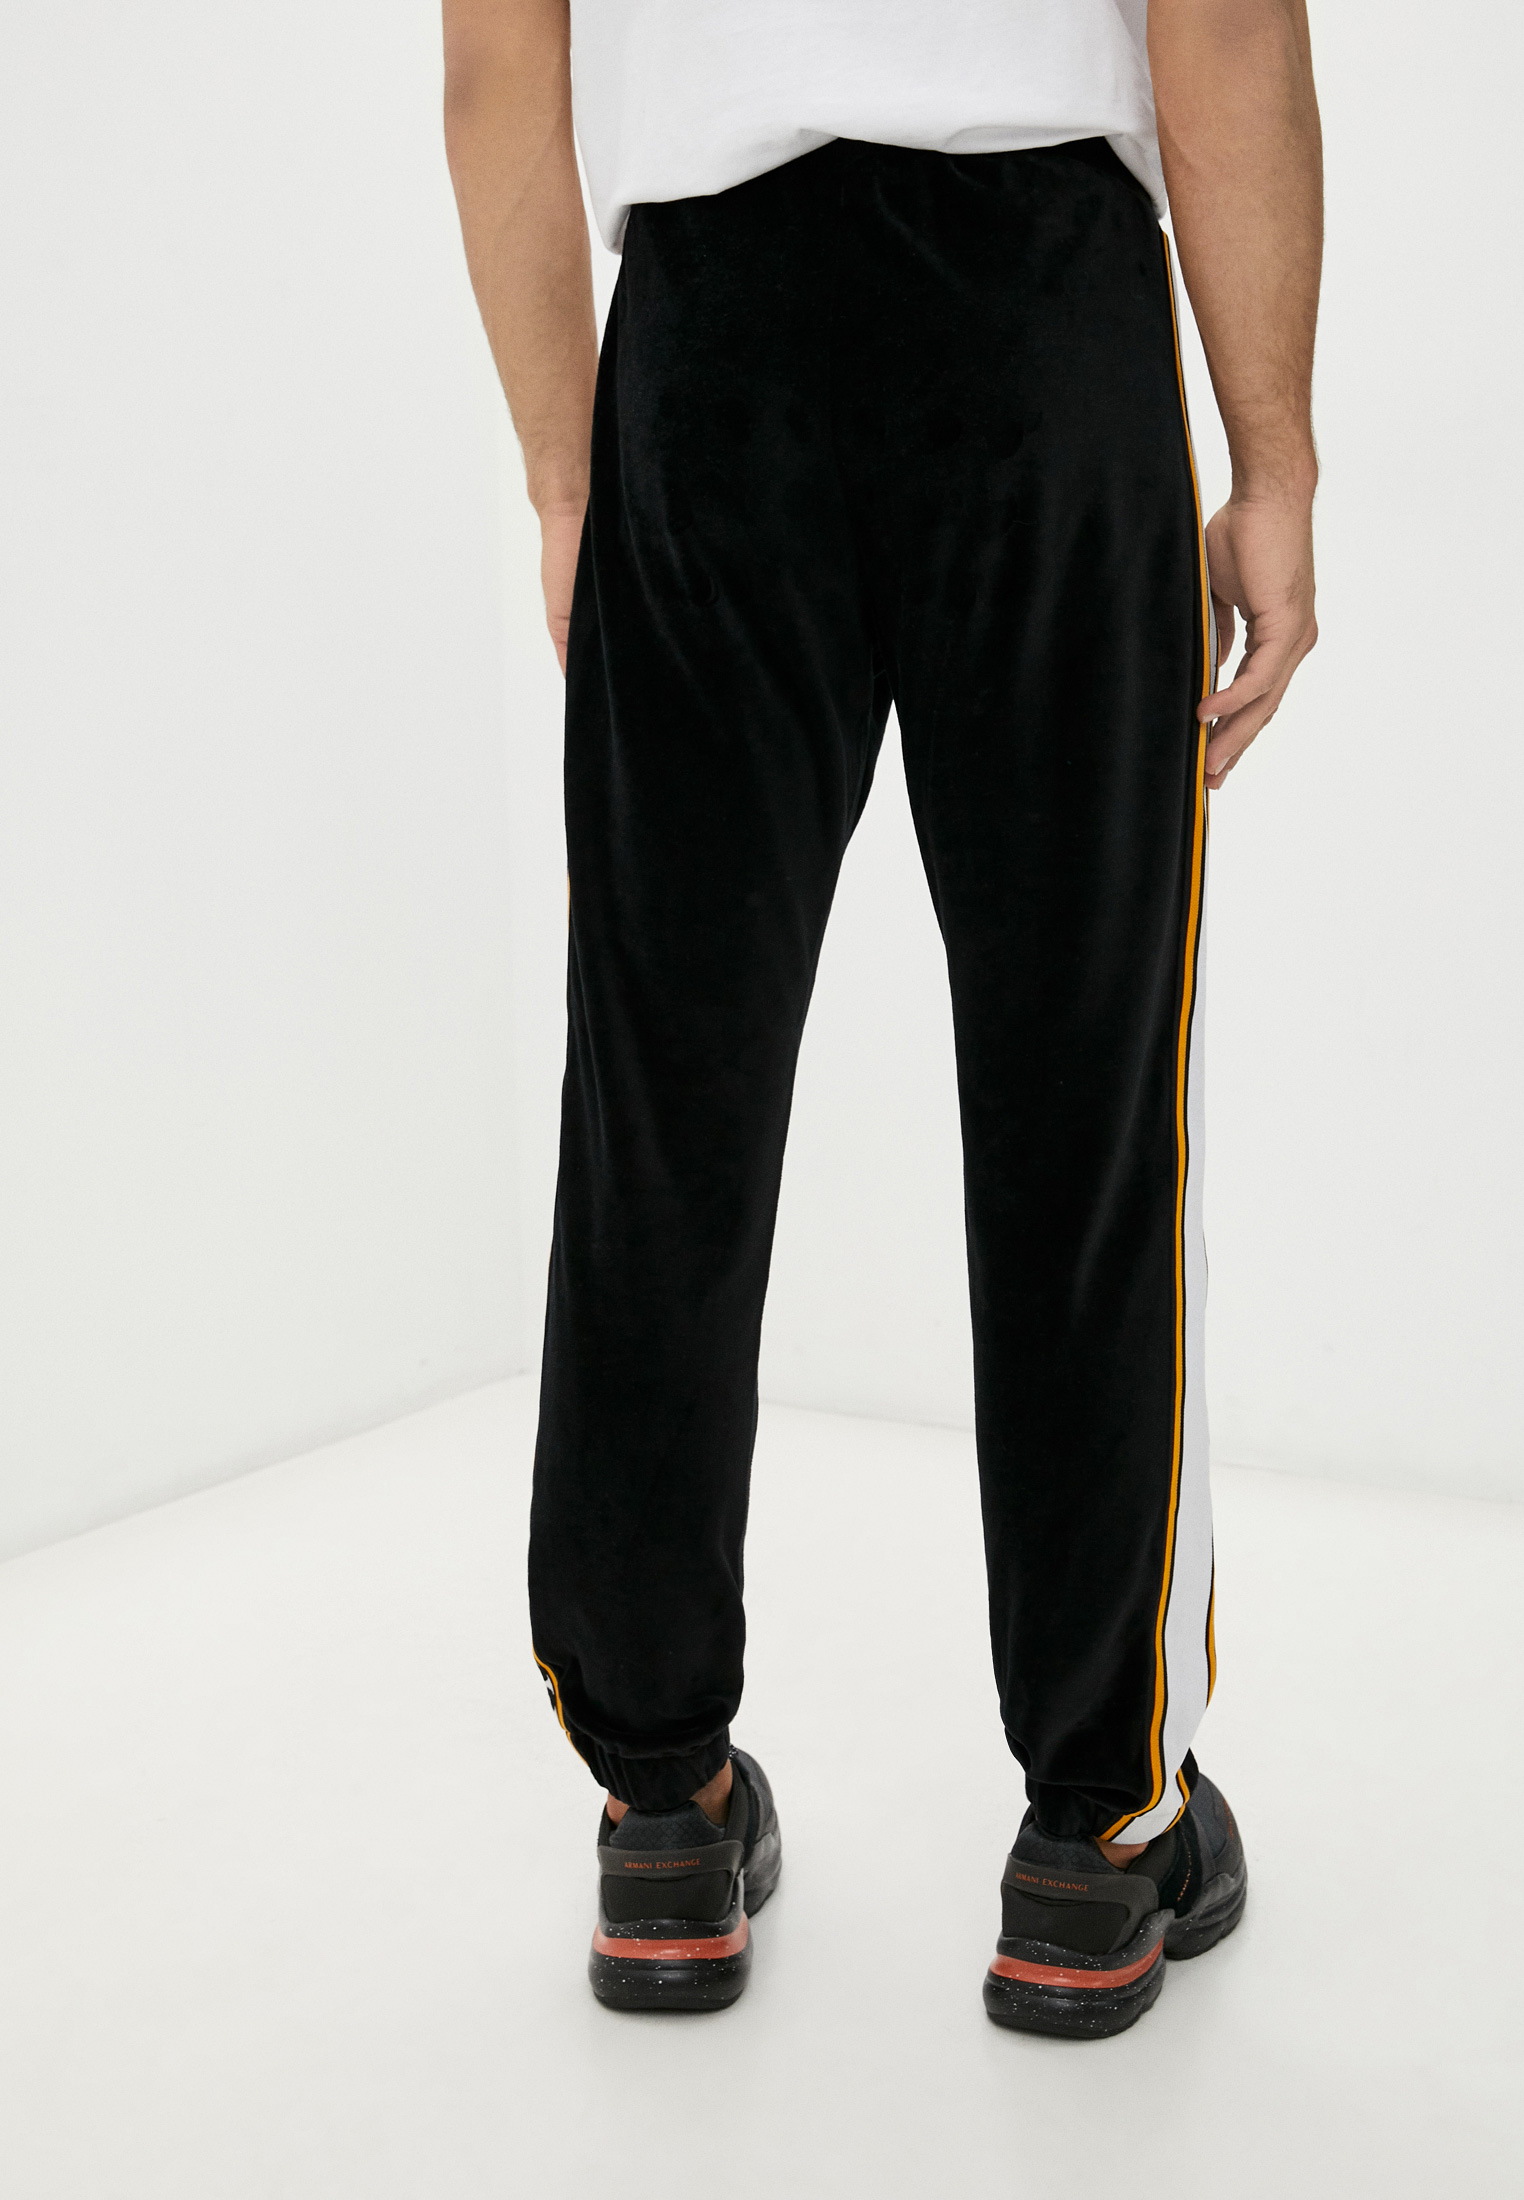 Мужские спортивные брюки Just Cavalli (Джаст Кавалли) S03KA0259N21589: изображение 4